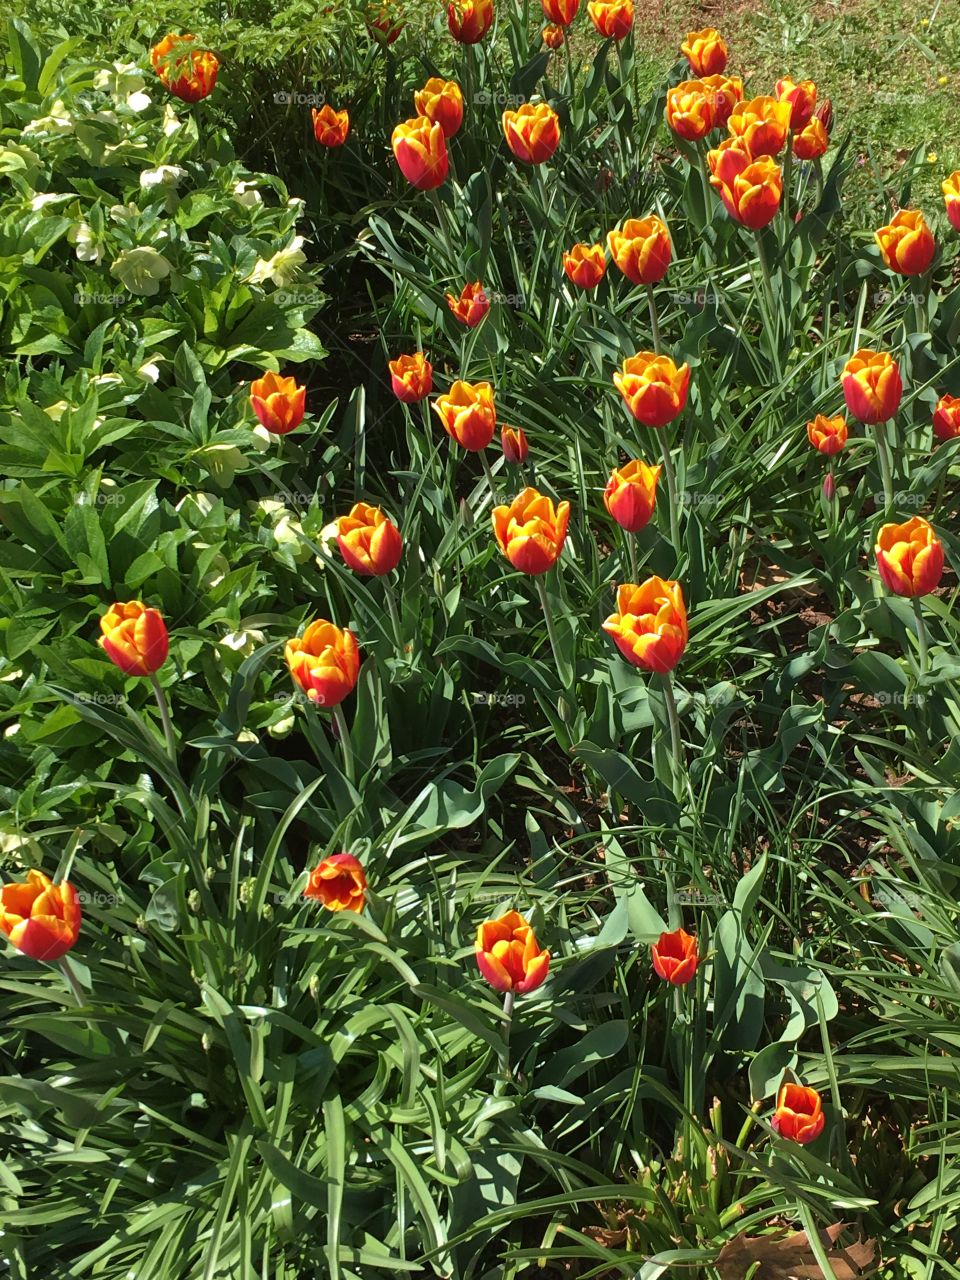 Tulips - Monticello